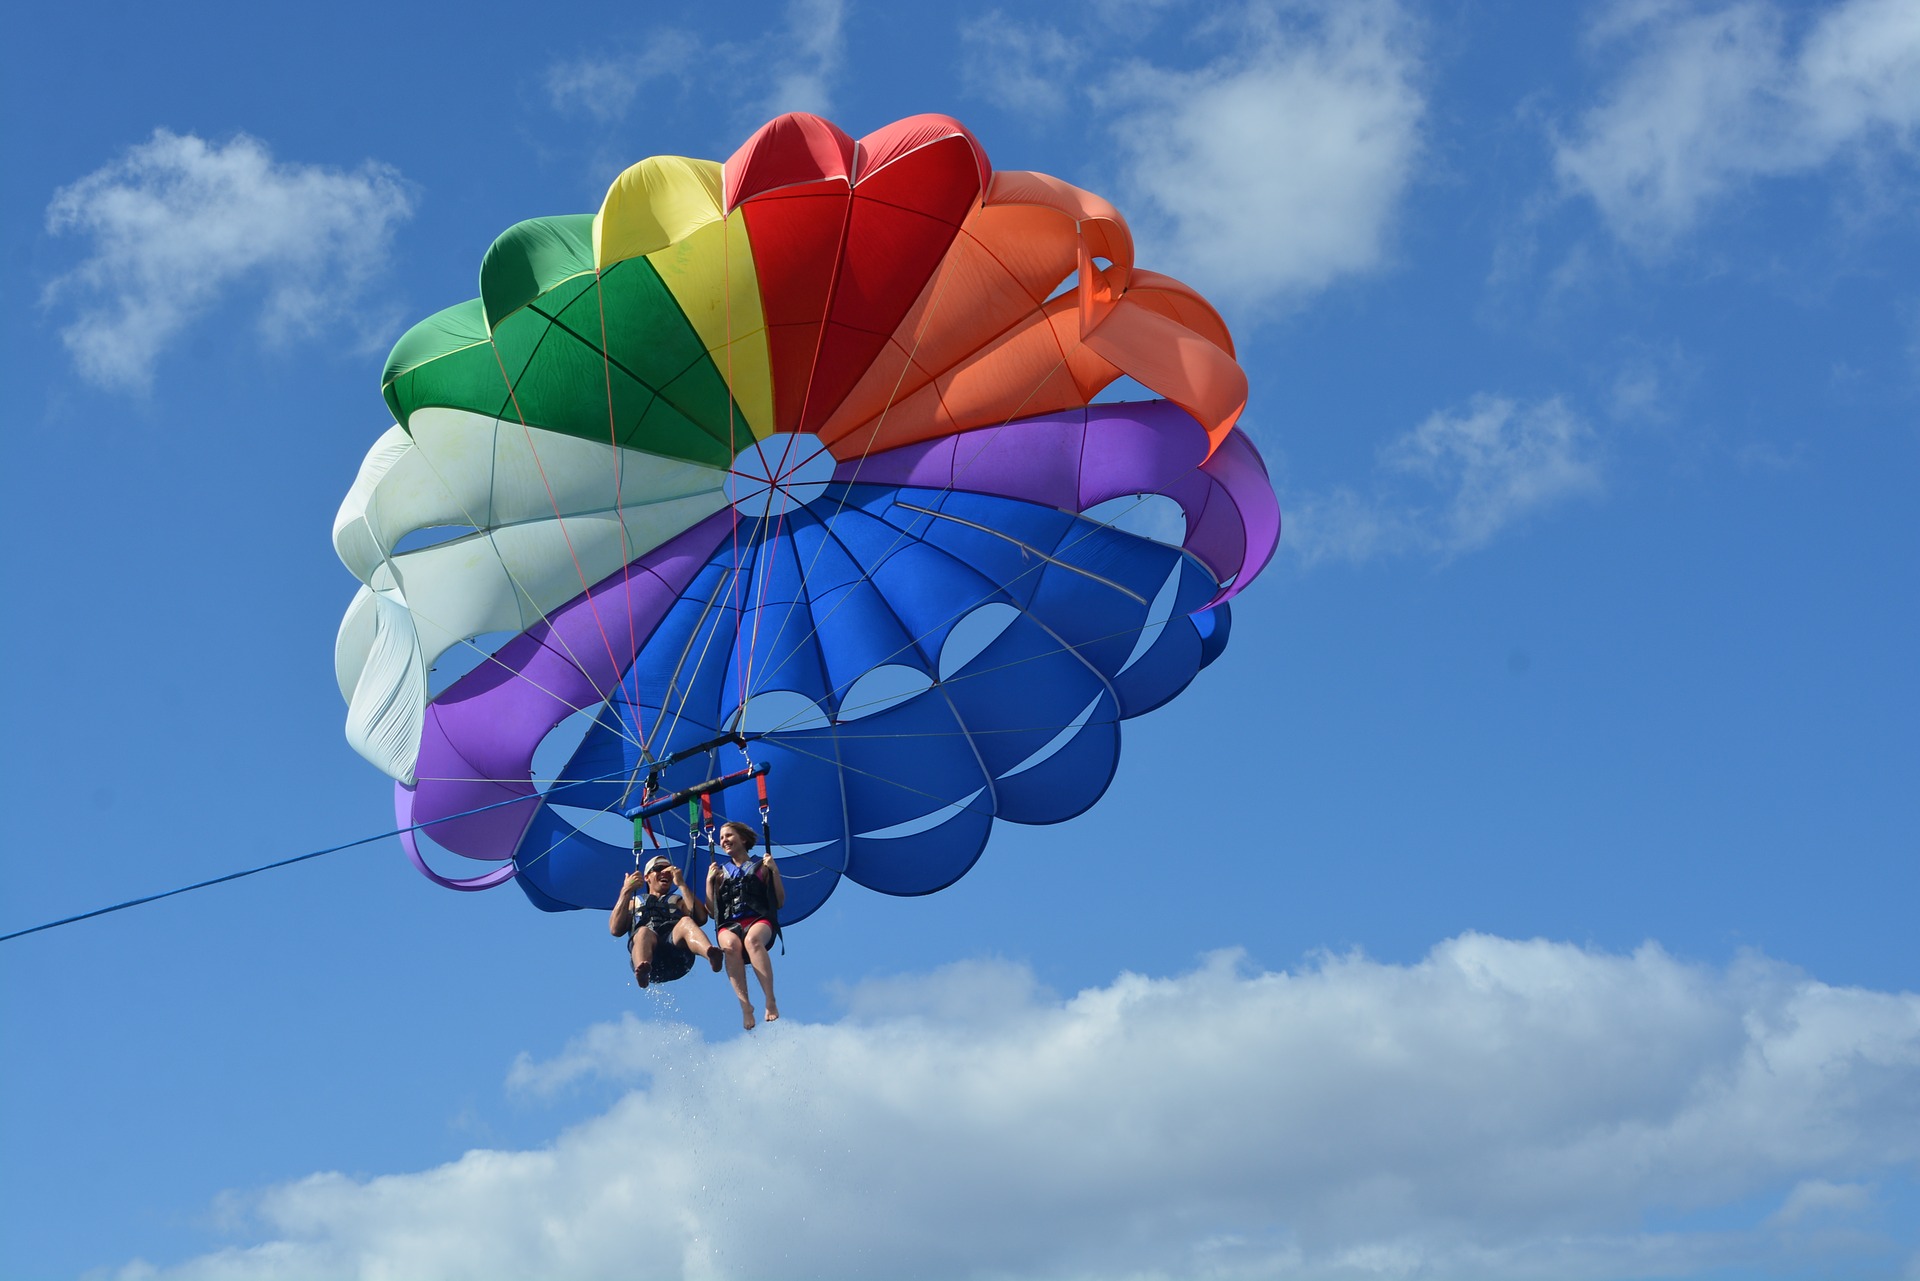 parasailing-2017-08-15-05-42